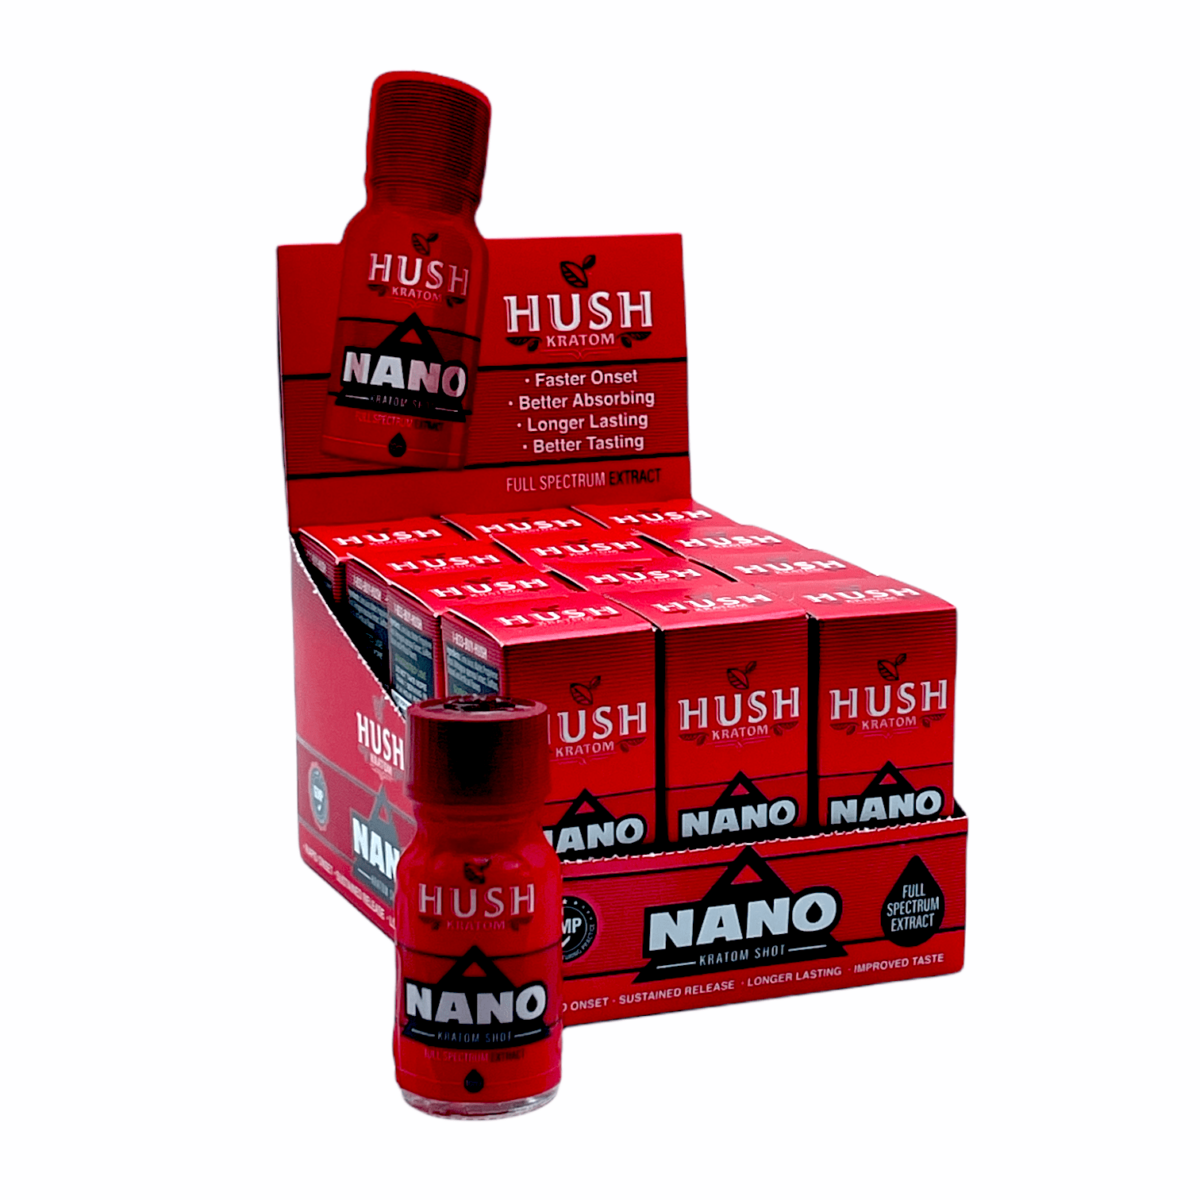 HUSH NANO Kratom Extract Liquid Shot – display box 10ml 12 bottles